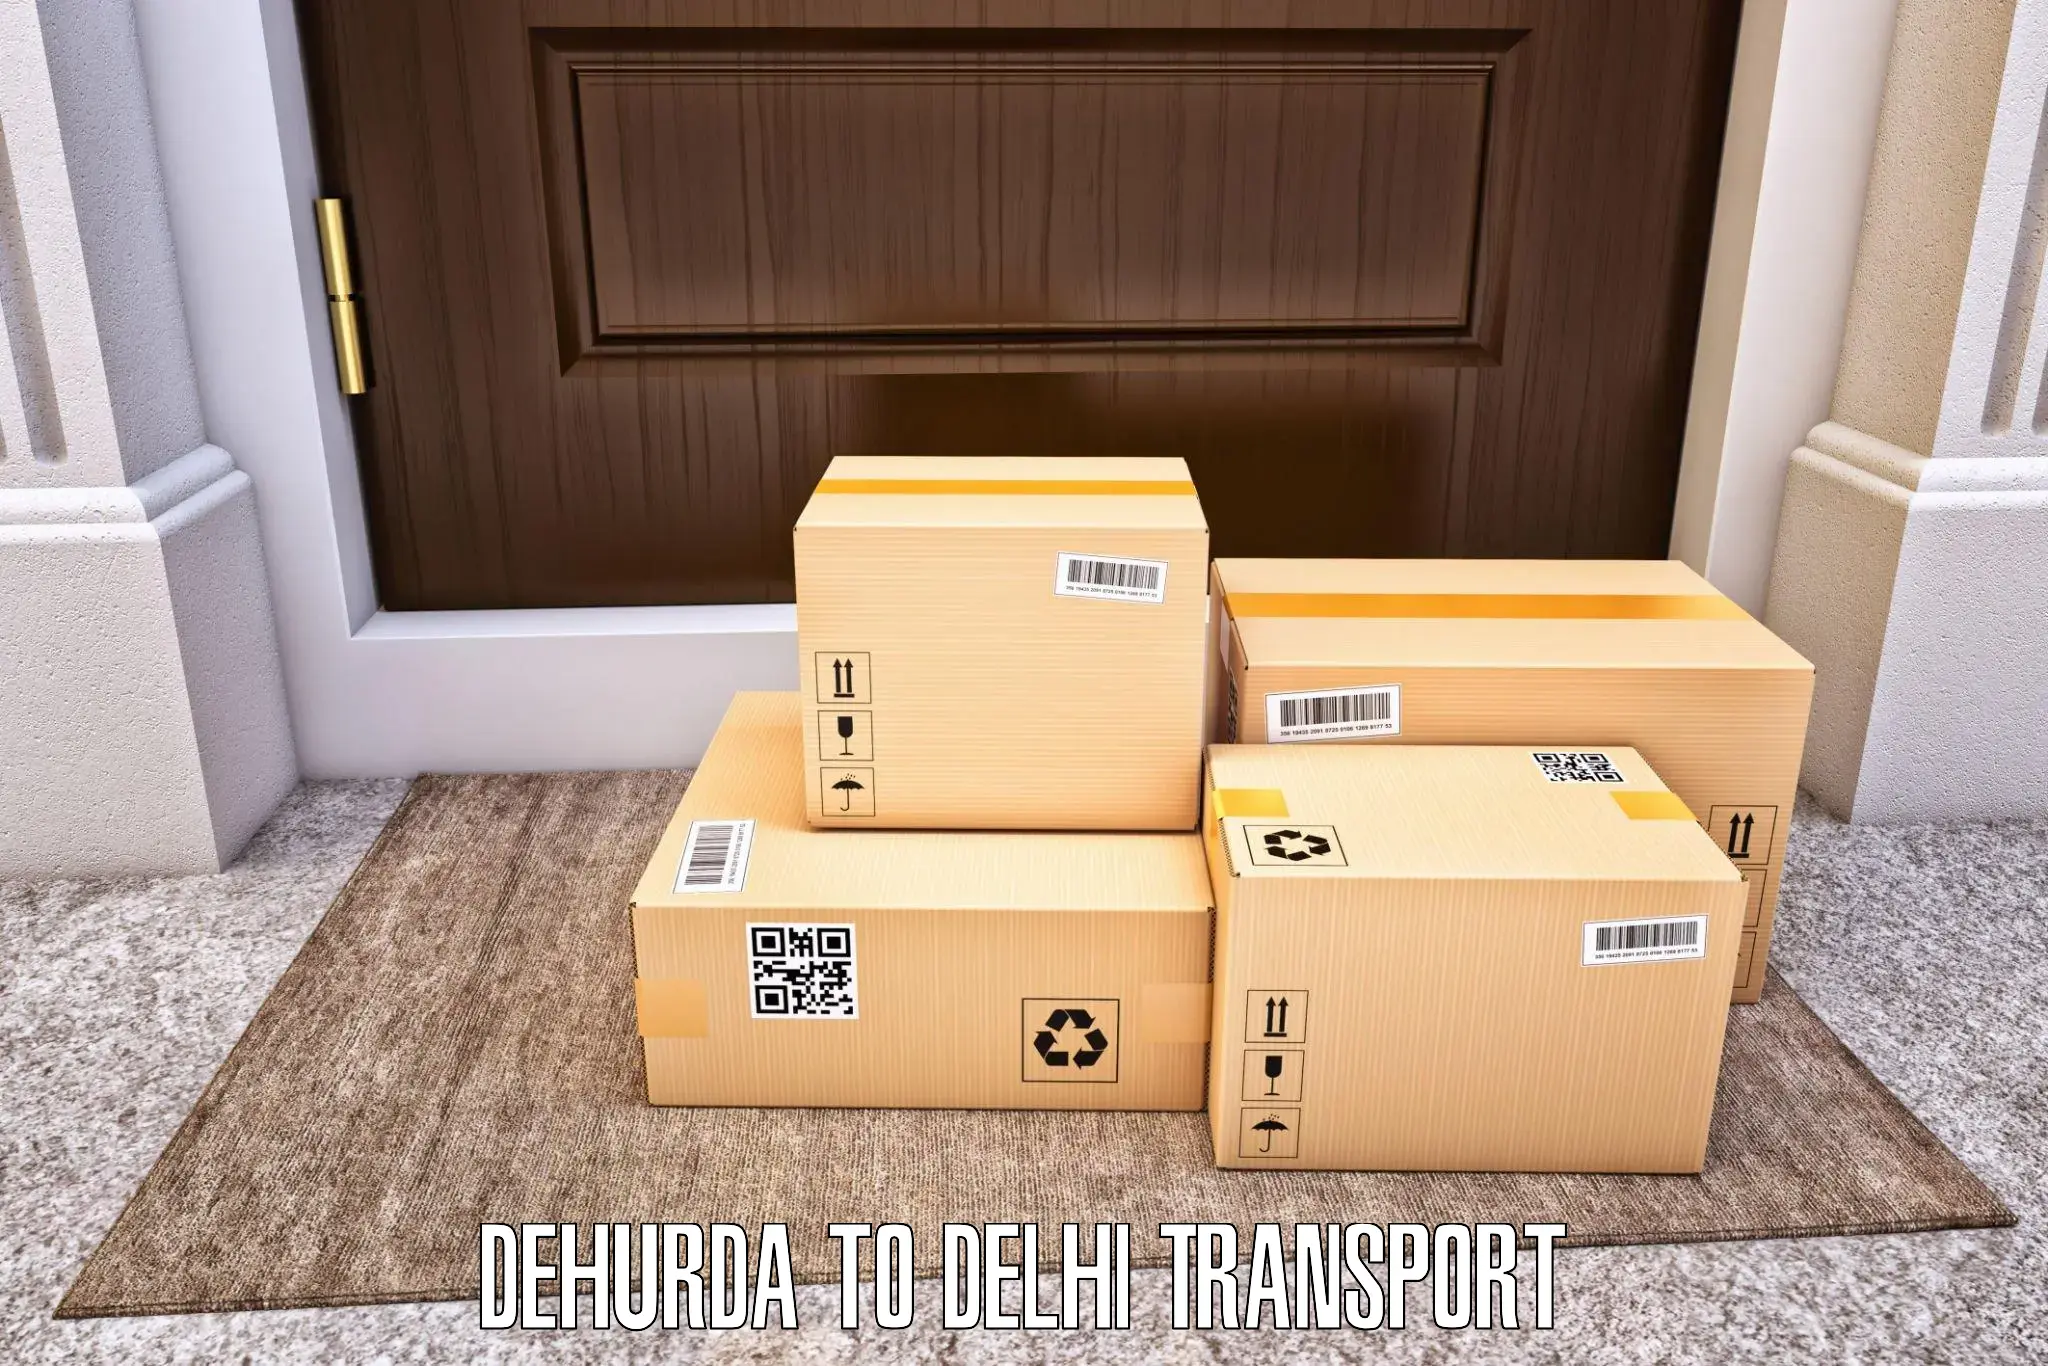 Domestic transport services Dehurda to Jamia Millia Islamia New Delhi